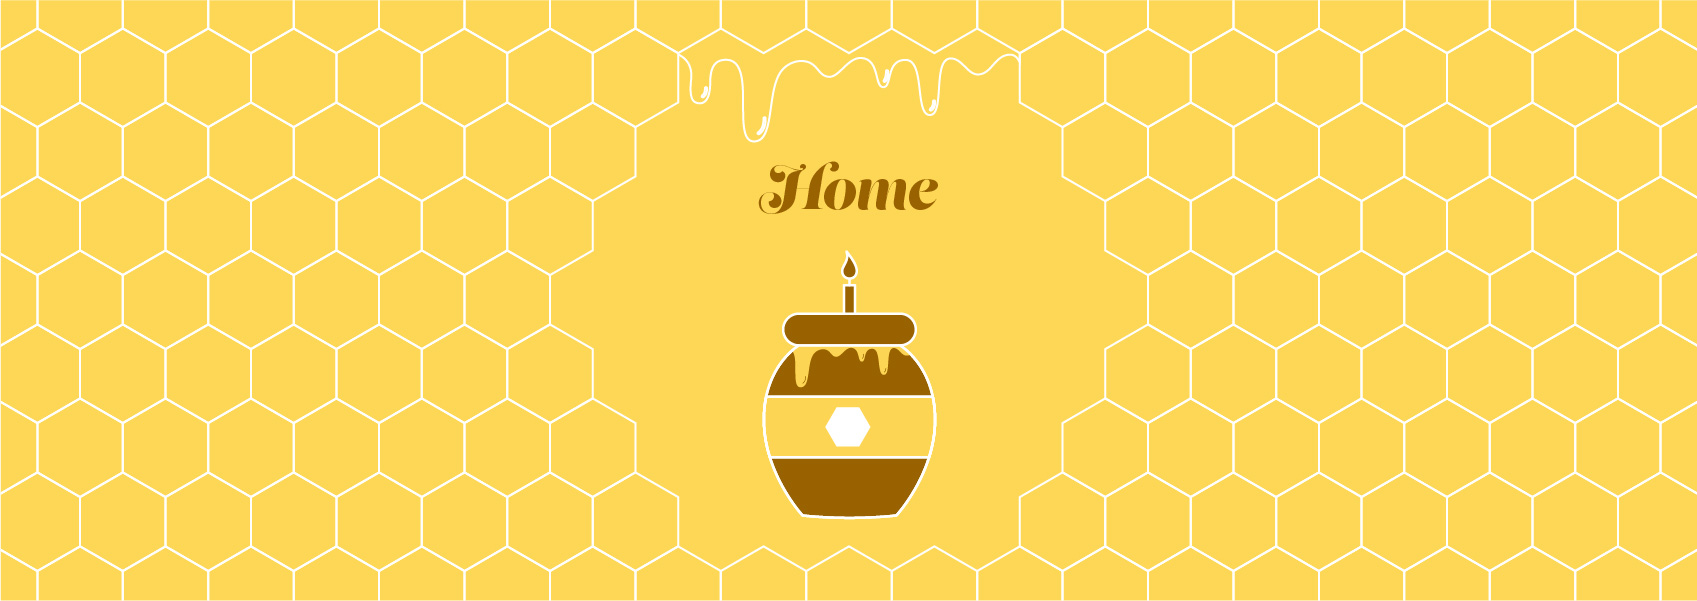 illustration of honeycomb, candle shaped like a bottle of honey